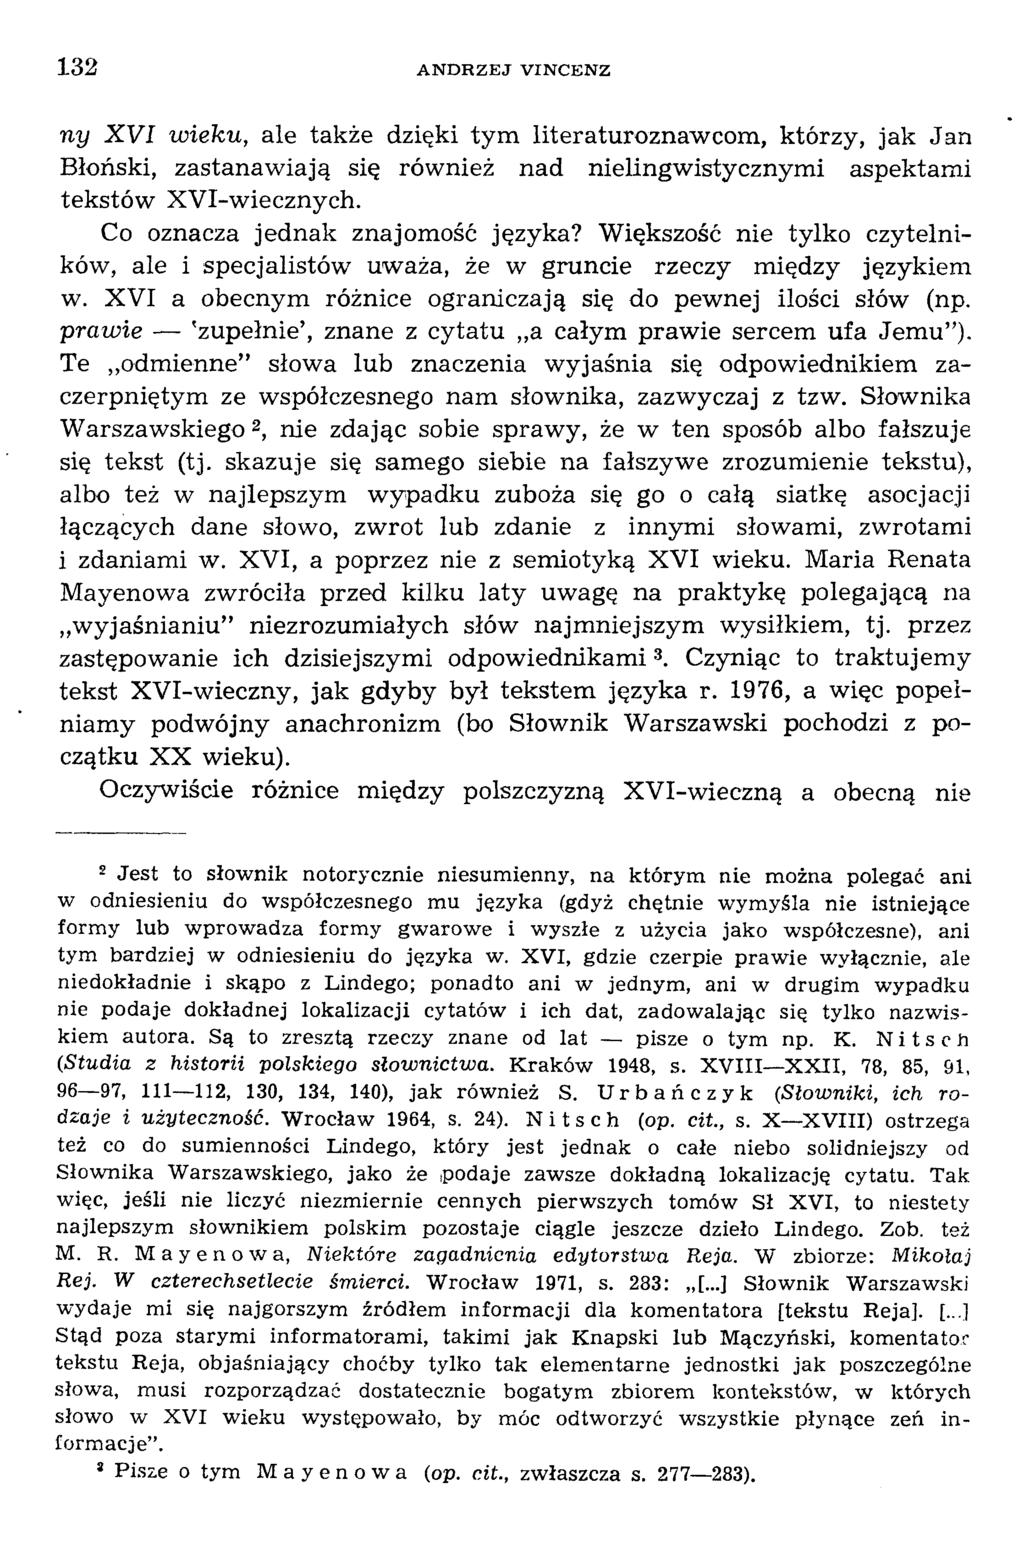 пу X V I w ieku, ale także dzięki tym literaturoznaw com, którzy, jak Jan Błoński, zastanaw iają się również nad nielingw istycznym i aspektam i tekstów XV I-w iecznych.